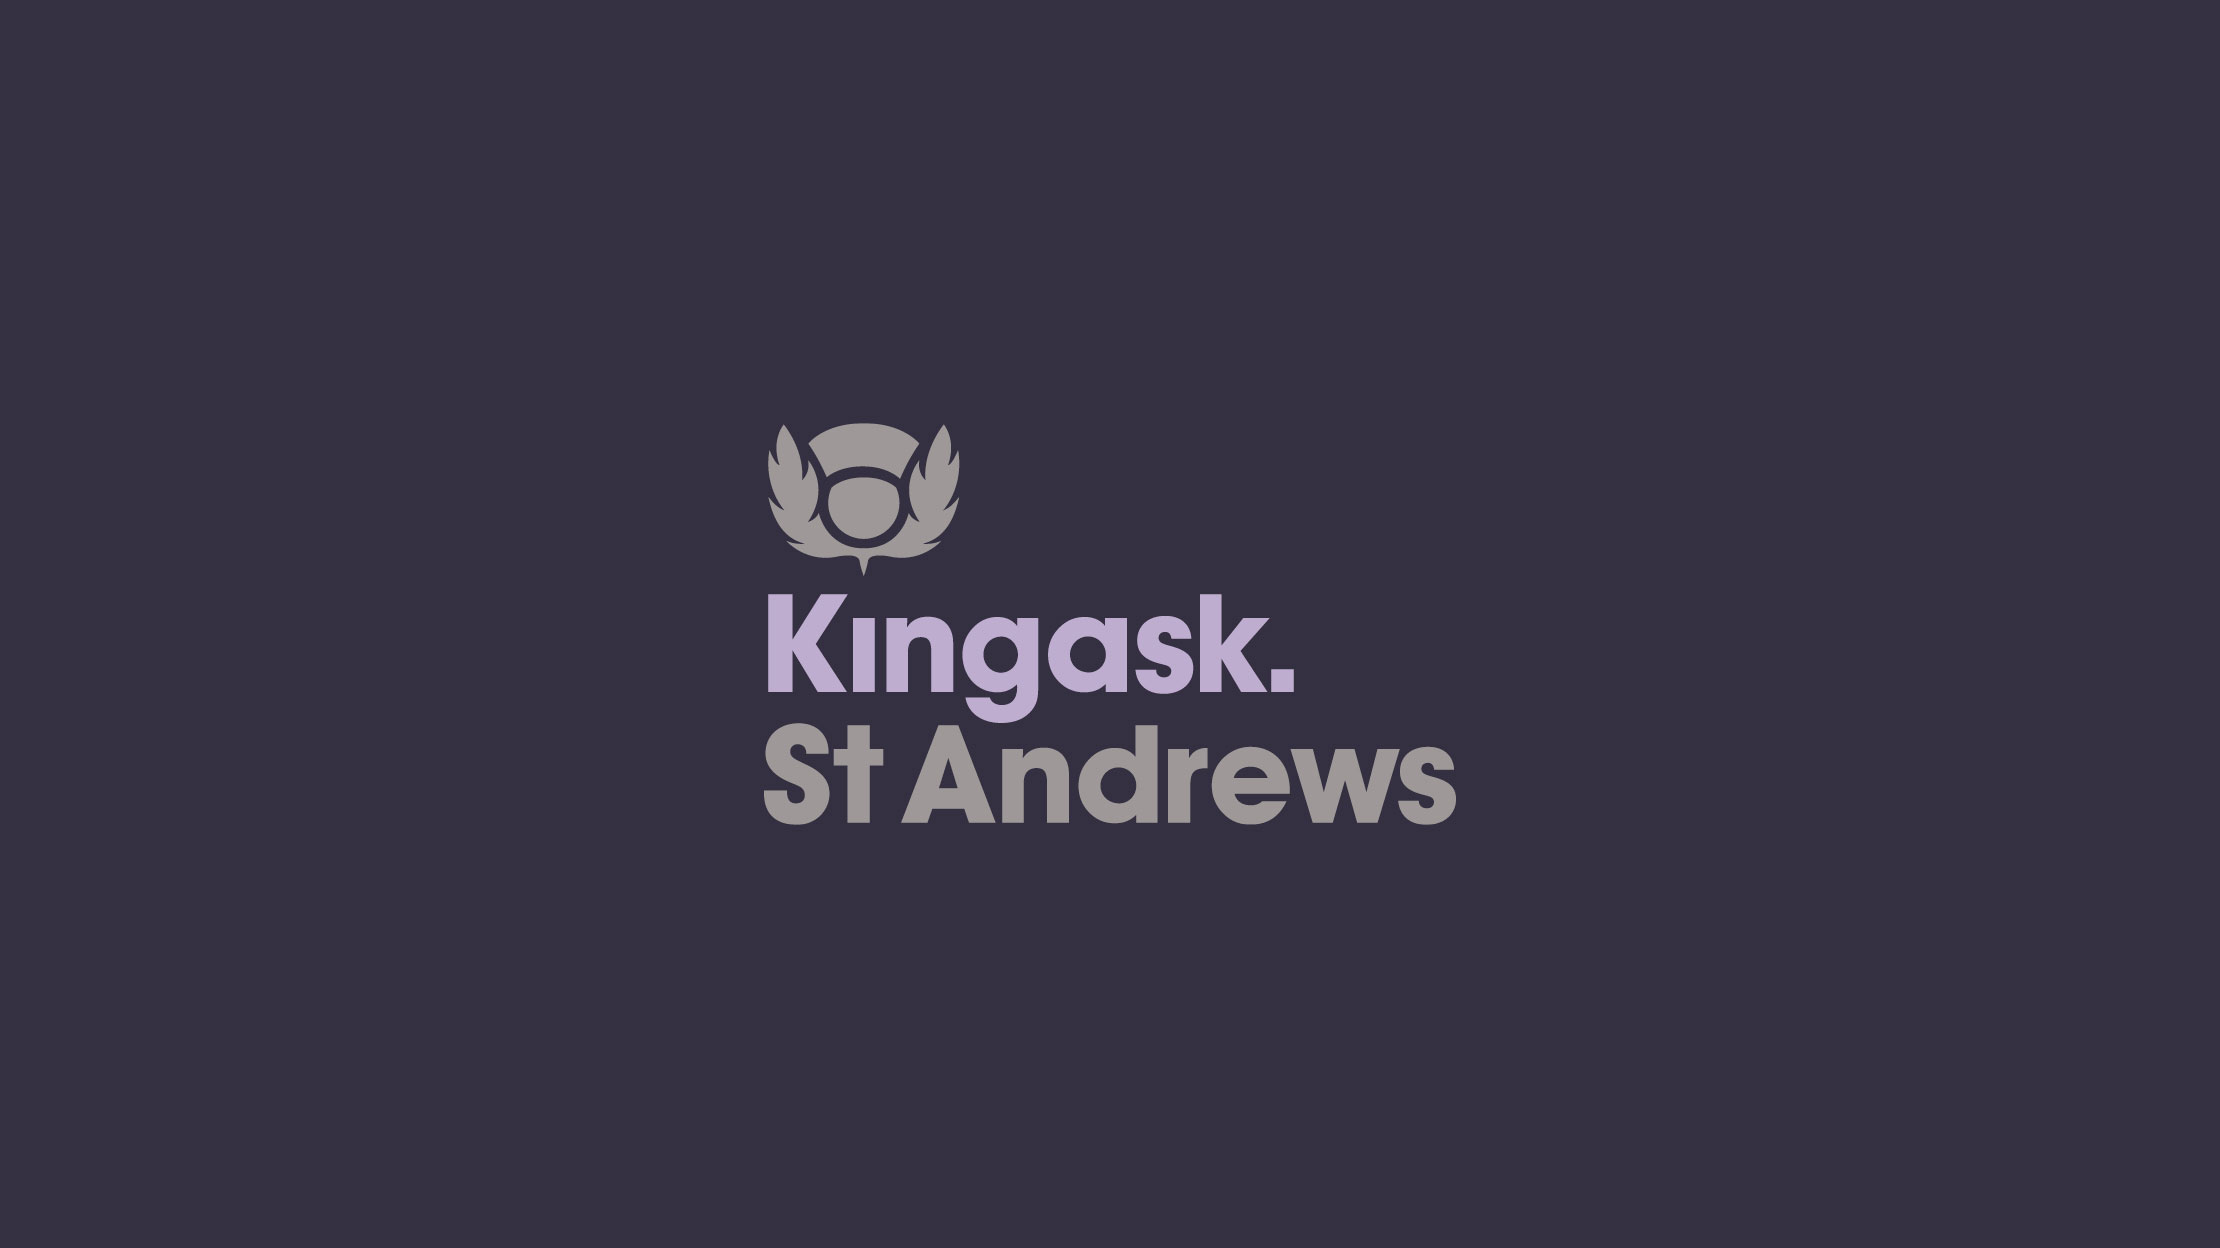 Kingask St Andrews logo design